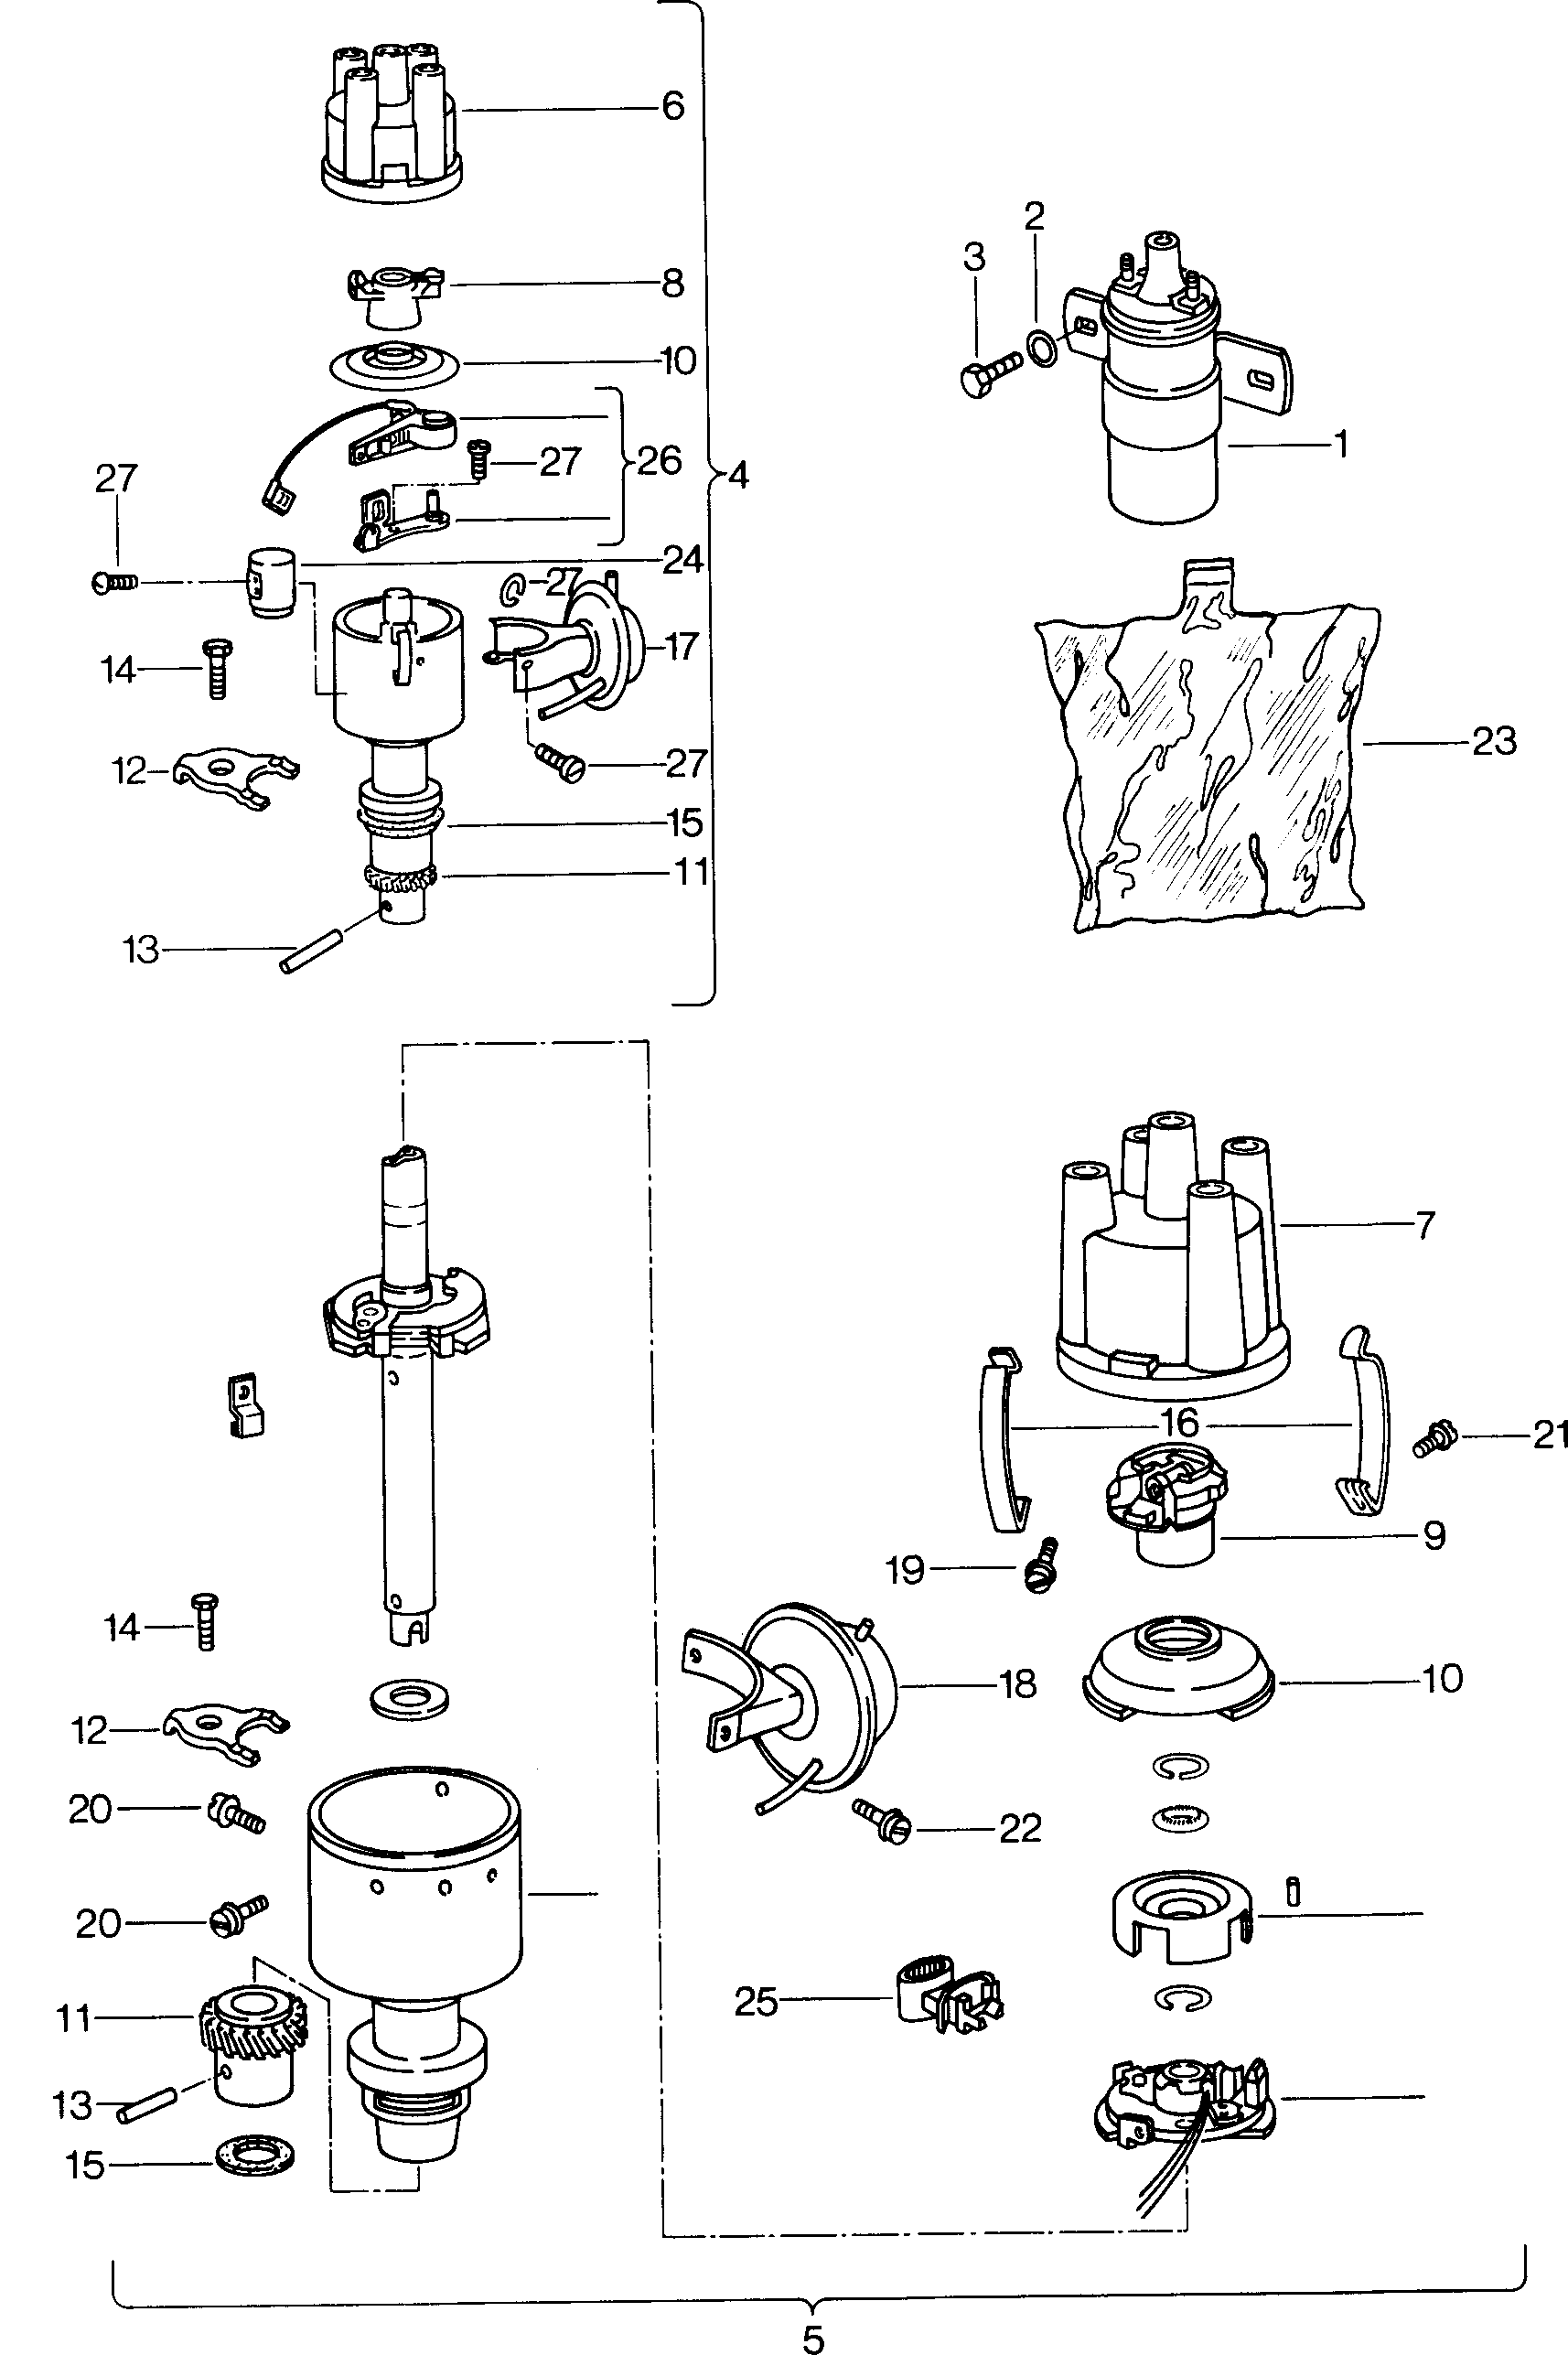 bobina accensionespinteroneno 12V - Mod.181 / Iltis - ilt